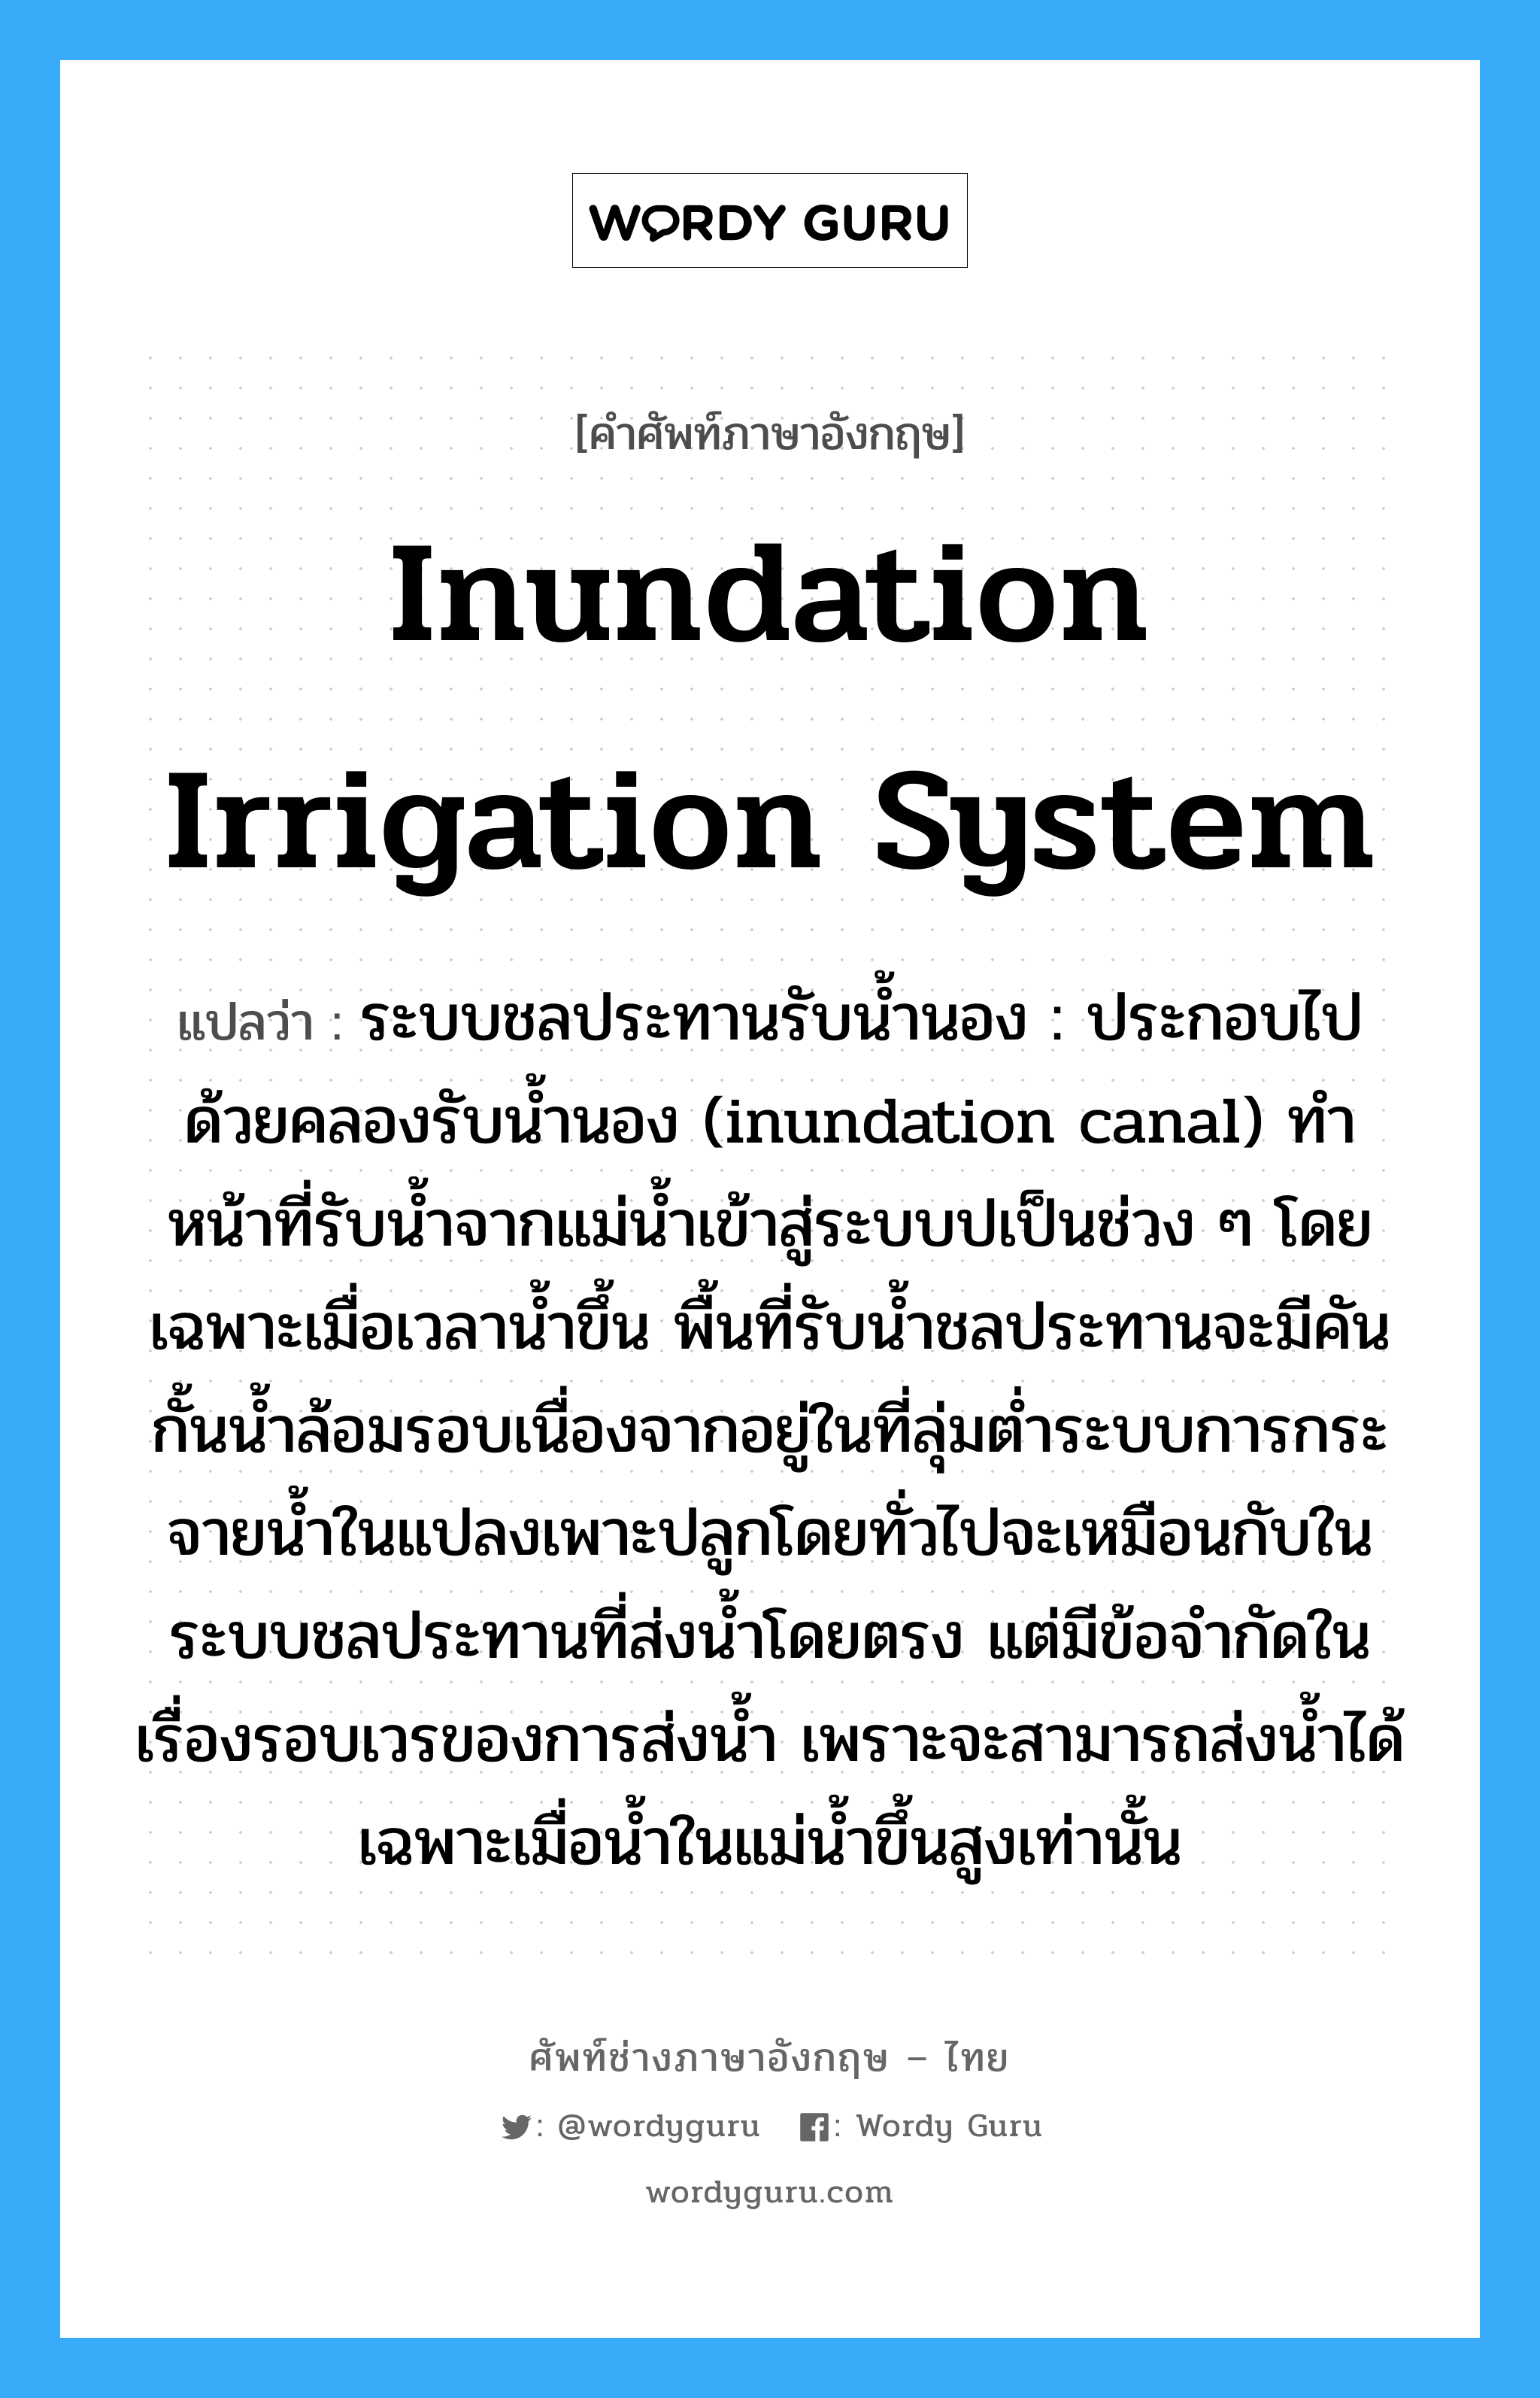 inundation irrigation system แปลว่า?, คำศัพท์ช่างภาษาอังกฤษ - ไทย inundation irrigation system คำศัพท์ภาษาอังกฤษ inundation irrigation system แปลว่า ระบบชลประทานรับน้ำนอง : ประกอบไปด้วยคลองรับน้ำนอง (inundation canal) ทำหน้าที่รับน้ำจากแม่น้ำเข้าสู่ระบบปเป็นช่วง ๆ โดยเฉพาะเมื่อเวลาน้ำขึ้น พื้นที่รับน้ำชลประทานจะมีคันกั้นน้ำล้อมรอบเนื่องจากอยู่ในที่ลุ่มต่ำระบบการกระจายน้ำในแปลงเพาะปลูกโดยทั่วไปจะเหมือนกับในระบบชลประทานที่ส่งน้ำโดยตรง แต่มีข้อจำกัดในเรื่องรอบเวรของการส่งน้ำ เพราะจะสามารถส่งน้ำได้เฉพาะเมื่อน้ำในแม่น้ำขึ้นสูงเท่านั้น